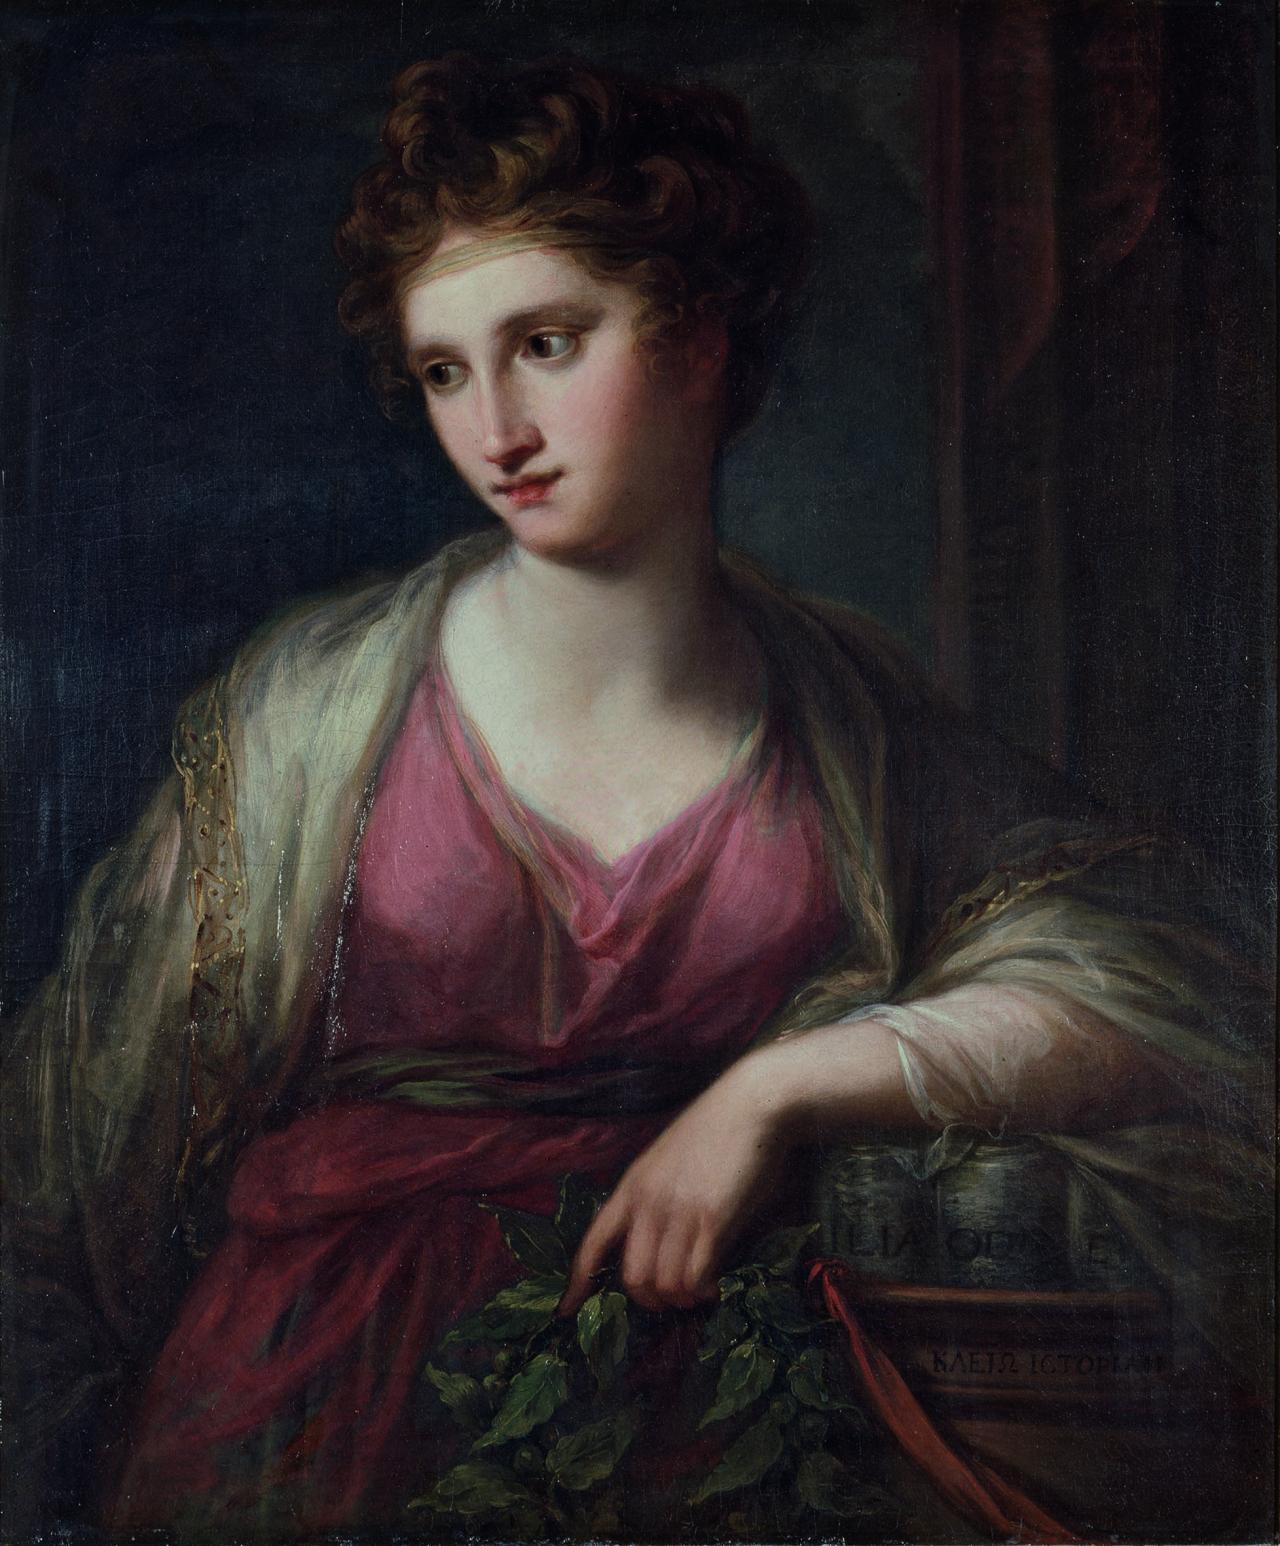 Zu sehen ist ein Gemälde, einer jungen Frau in rotem Gewand. Sie sitzt vor einem dunklen Hintergrund und hält in ihrer Hand einen Zweig. 